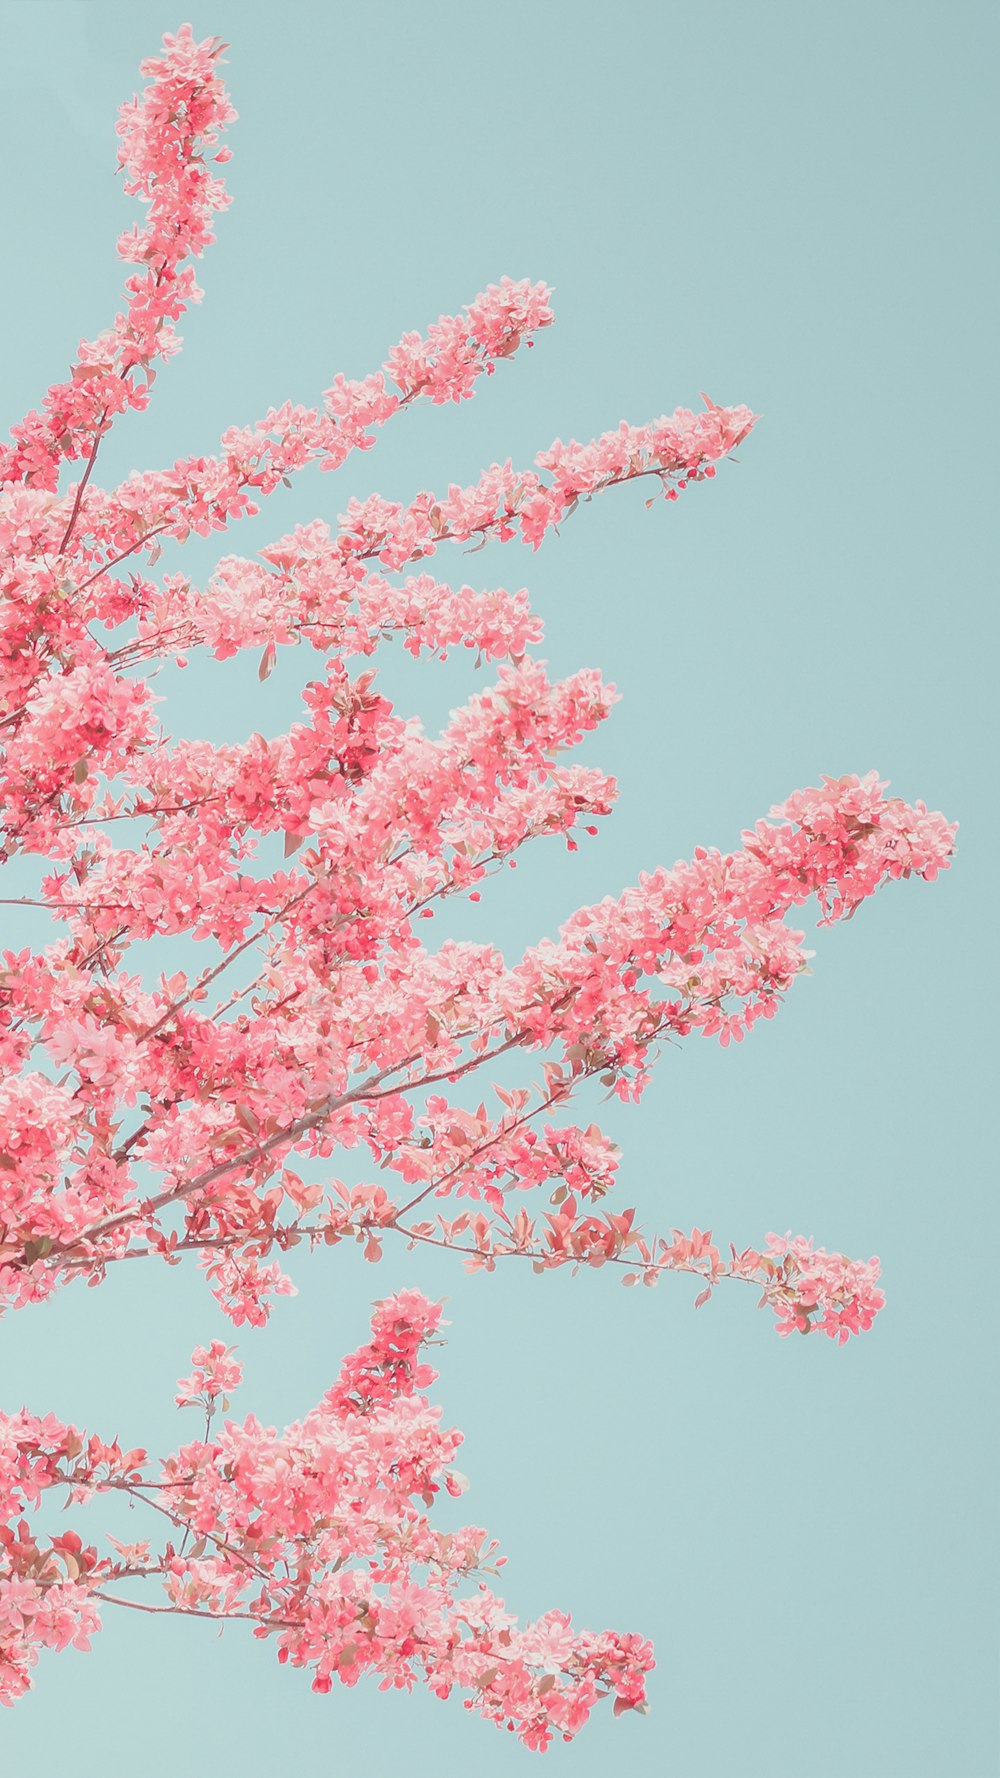 푸른 하늘 앞에 분홍색 꽃이 핀 나무